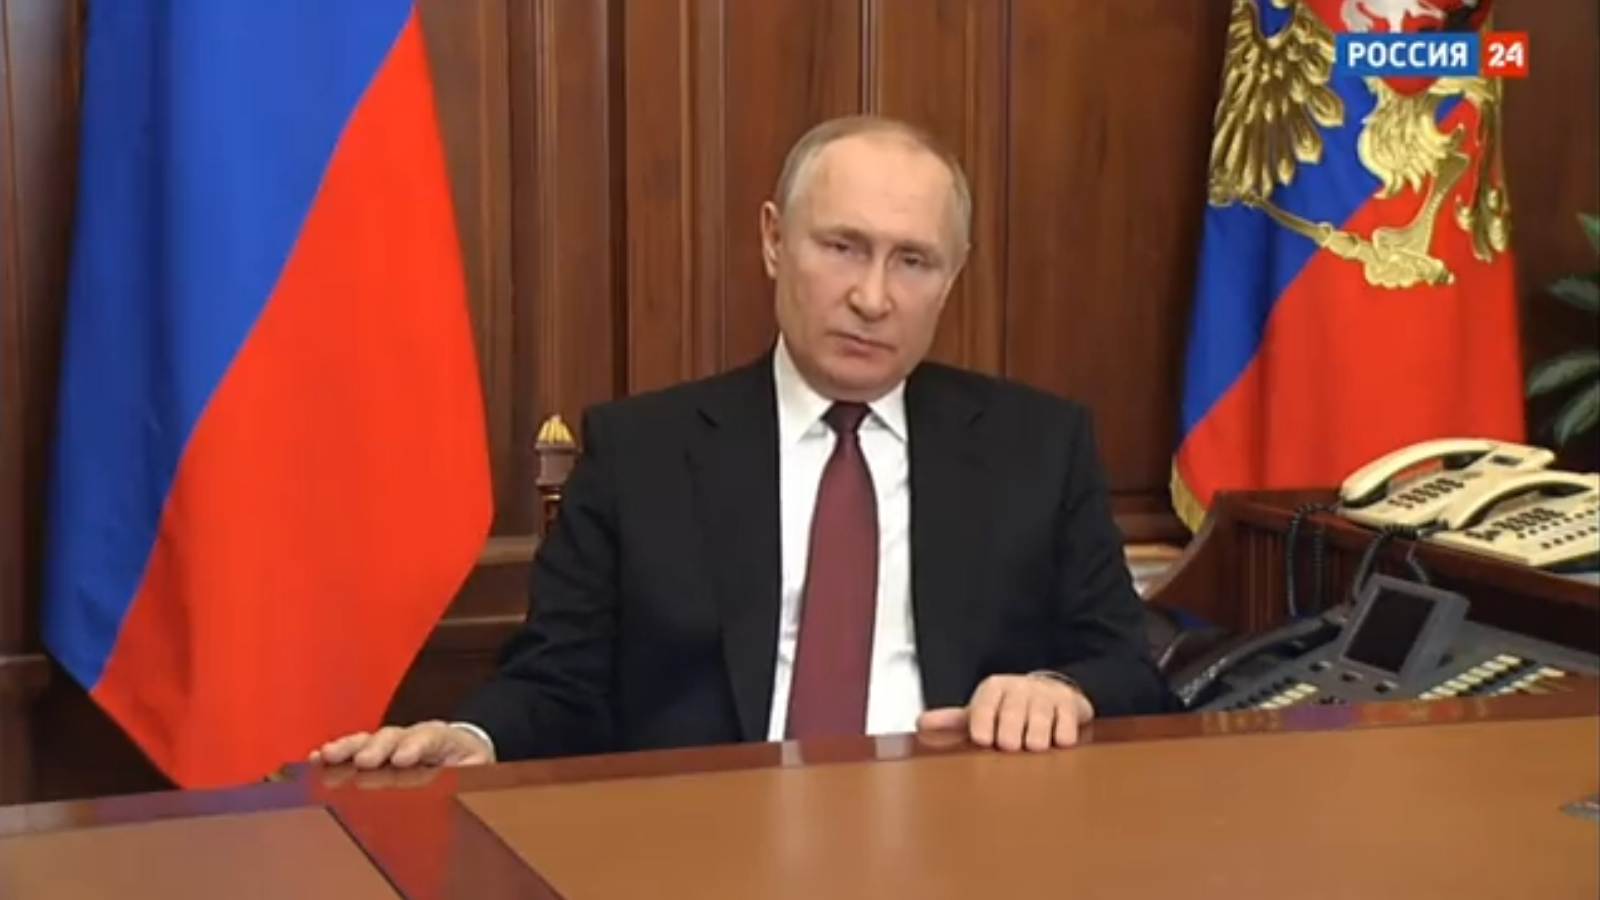 Η σημειολογία της γραβάτας Πούτιν: Είχε μαγνητοσκοπήσει το διάγγελμα της εισβολής δύο μέρες νωρίτερα;